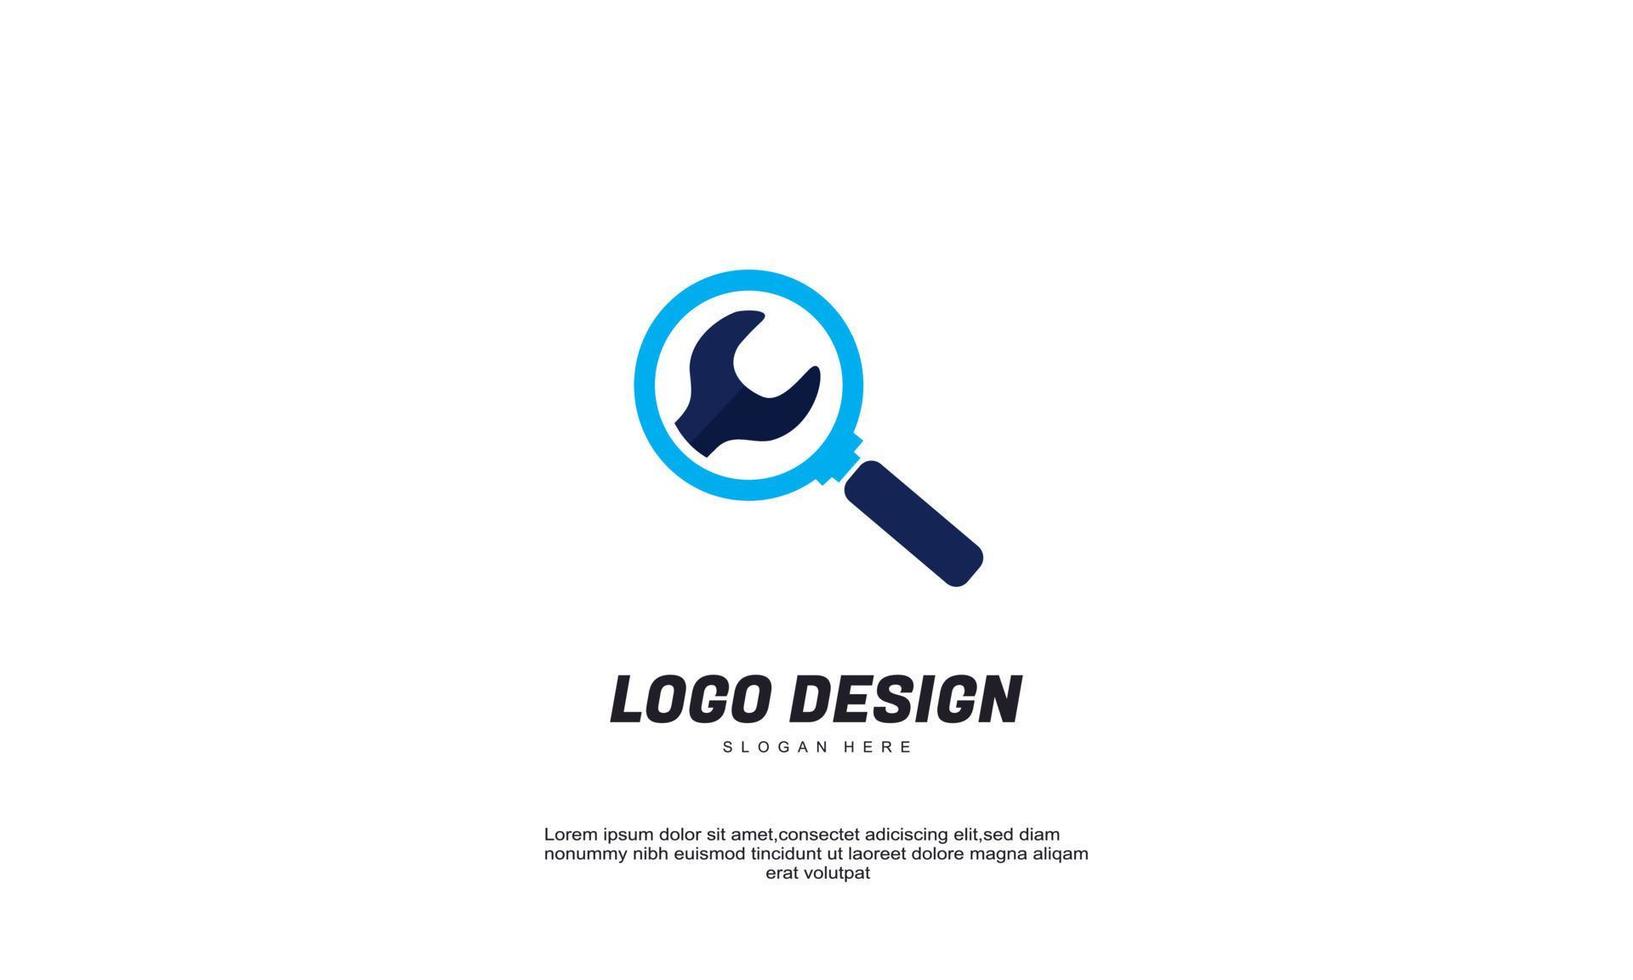 Lager Vektor kreative finden Business Icon Service-Sammlung für Corporate Identity Logo